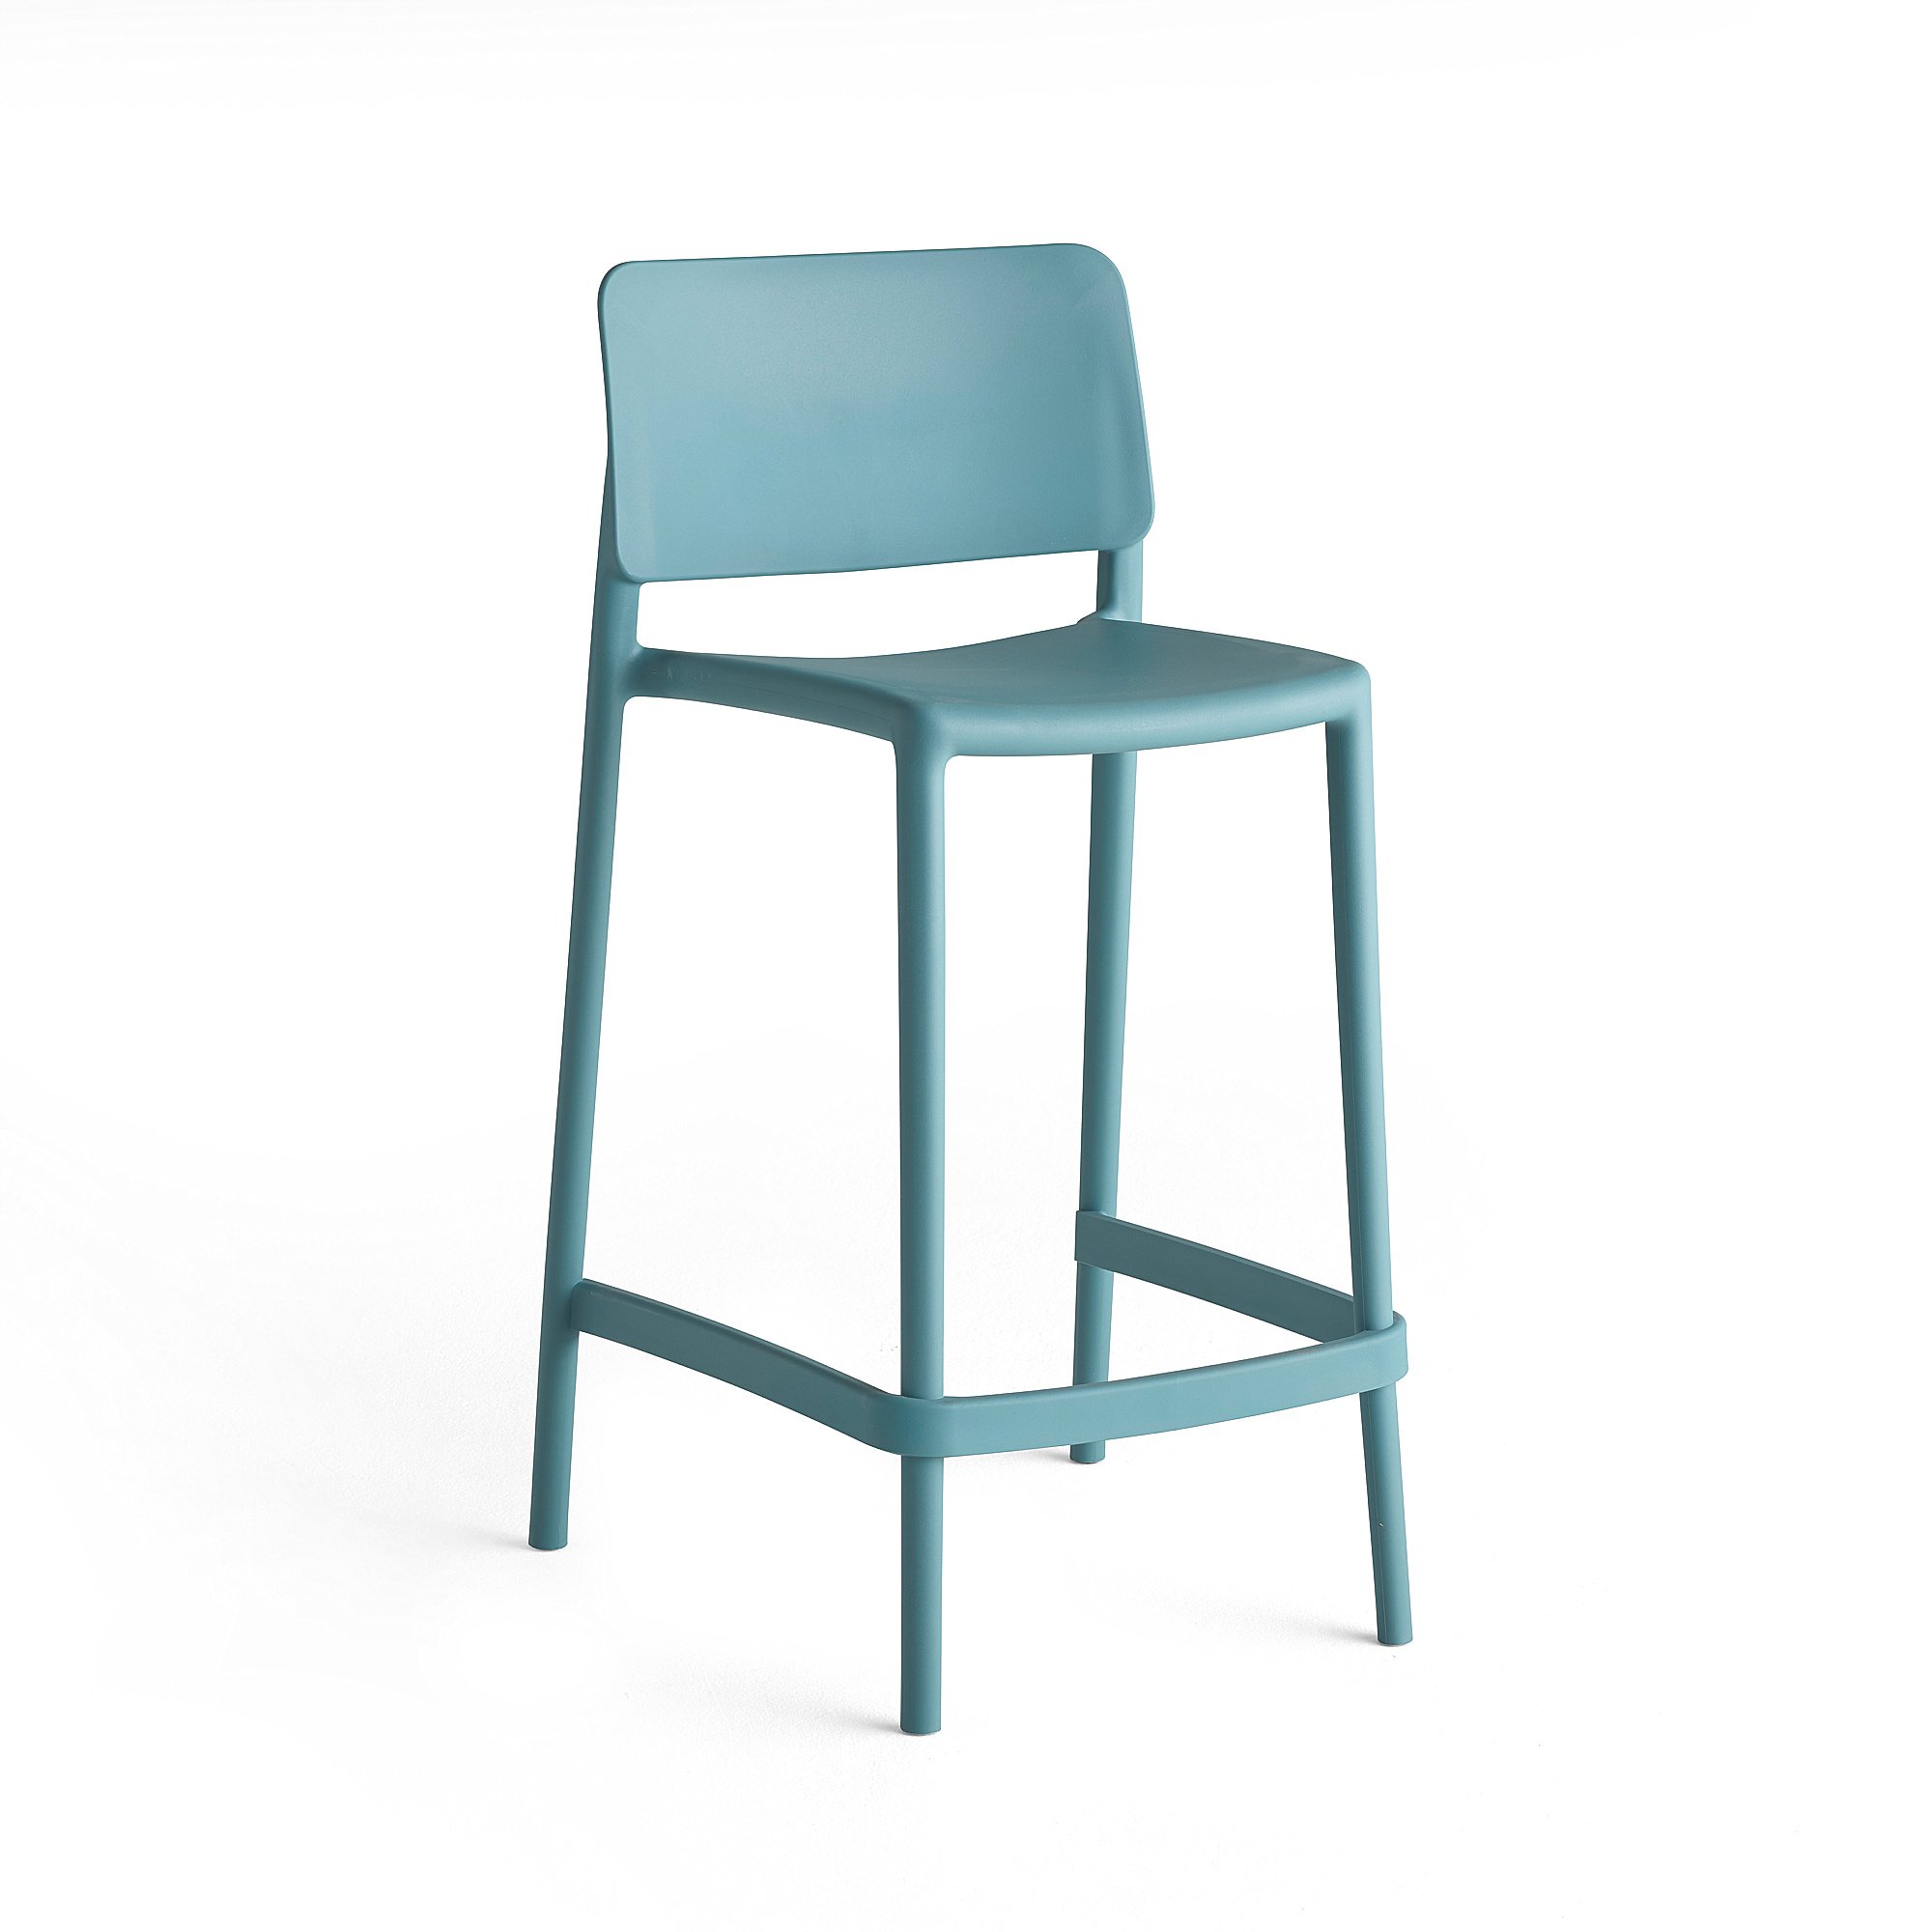 E-shop Barová stolička RIO, výška sedáku 650 mm, tyrkysová